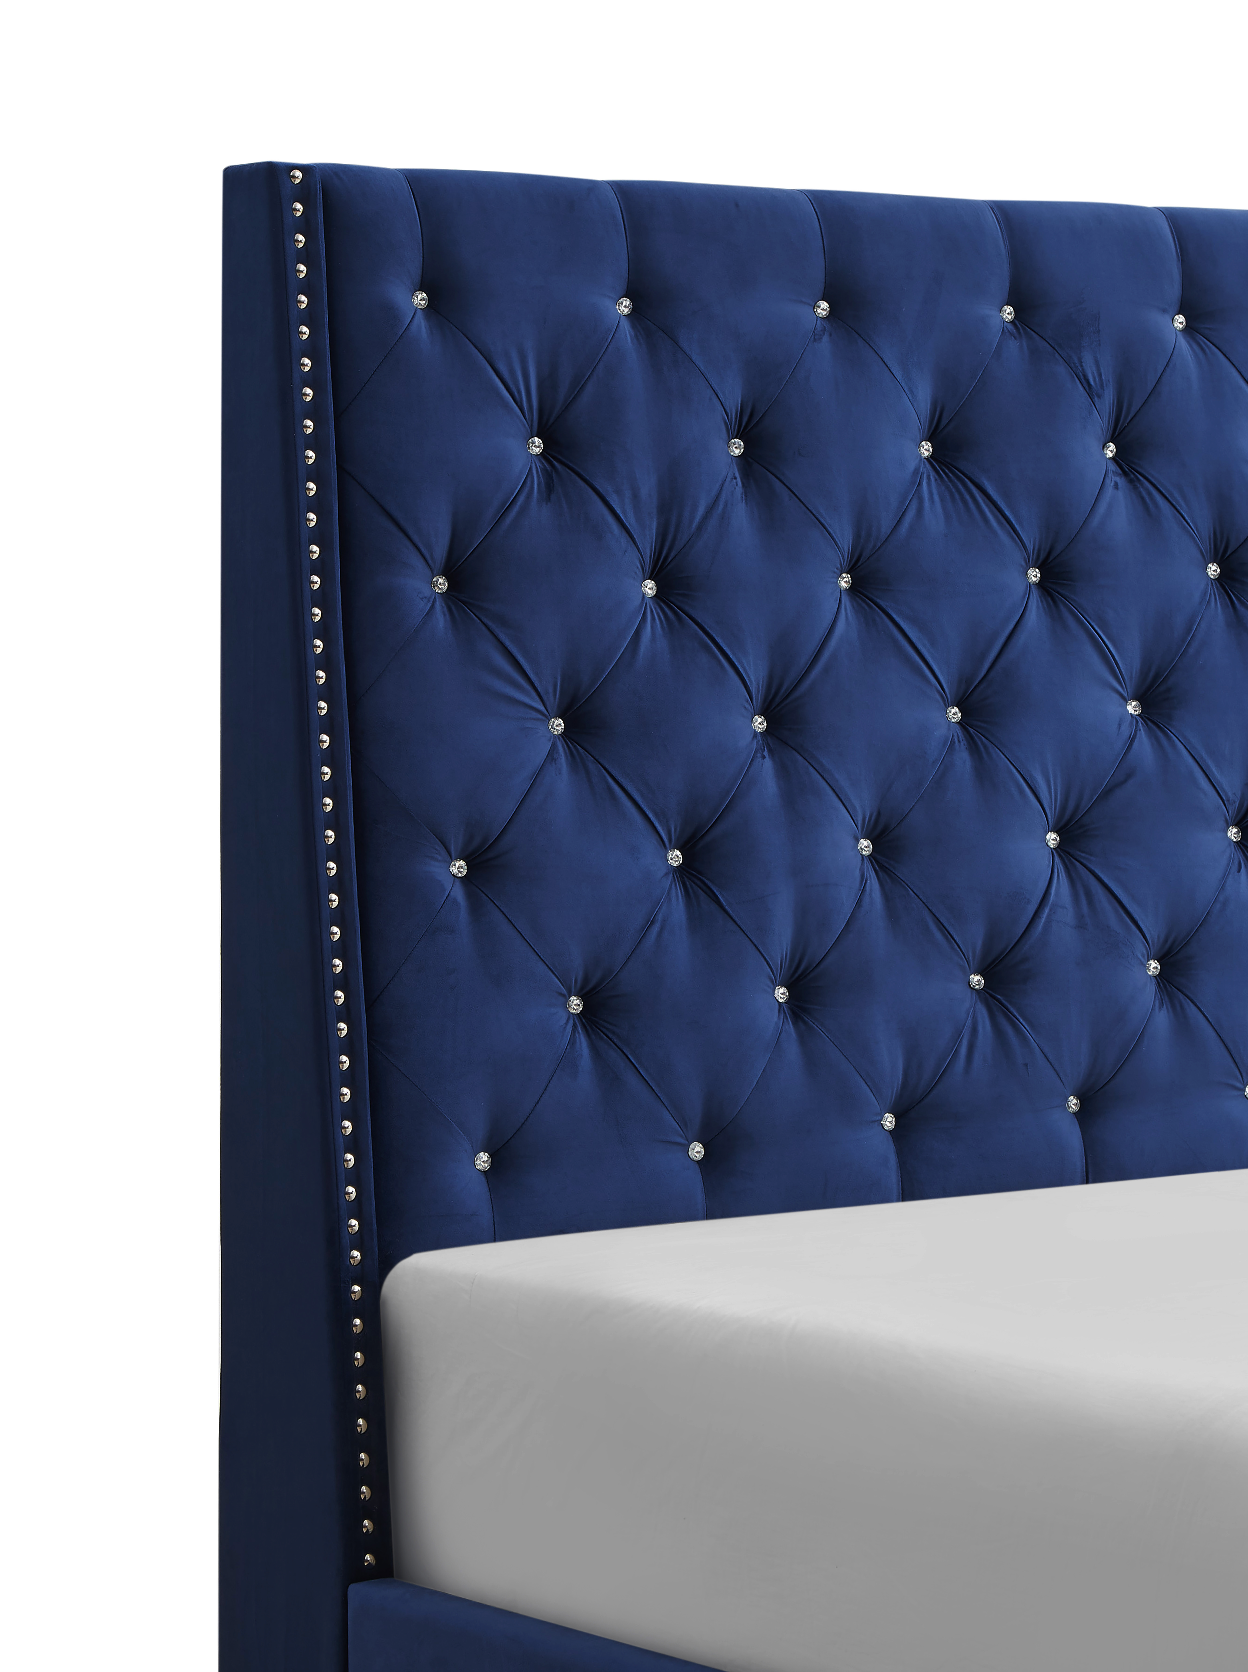 Chantilly Royal Blue Velvet King Upholstered Bed - SET | 5265RB-K-HB | 5265RB-K-FRW - Bien Home Furniture &amp; Electronics